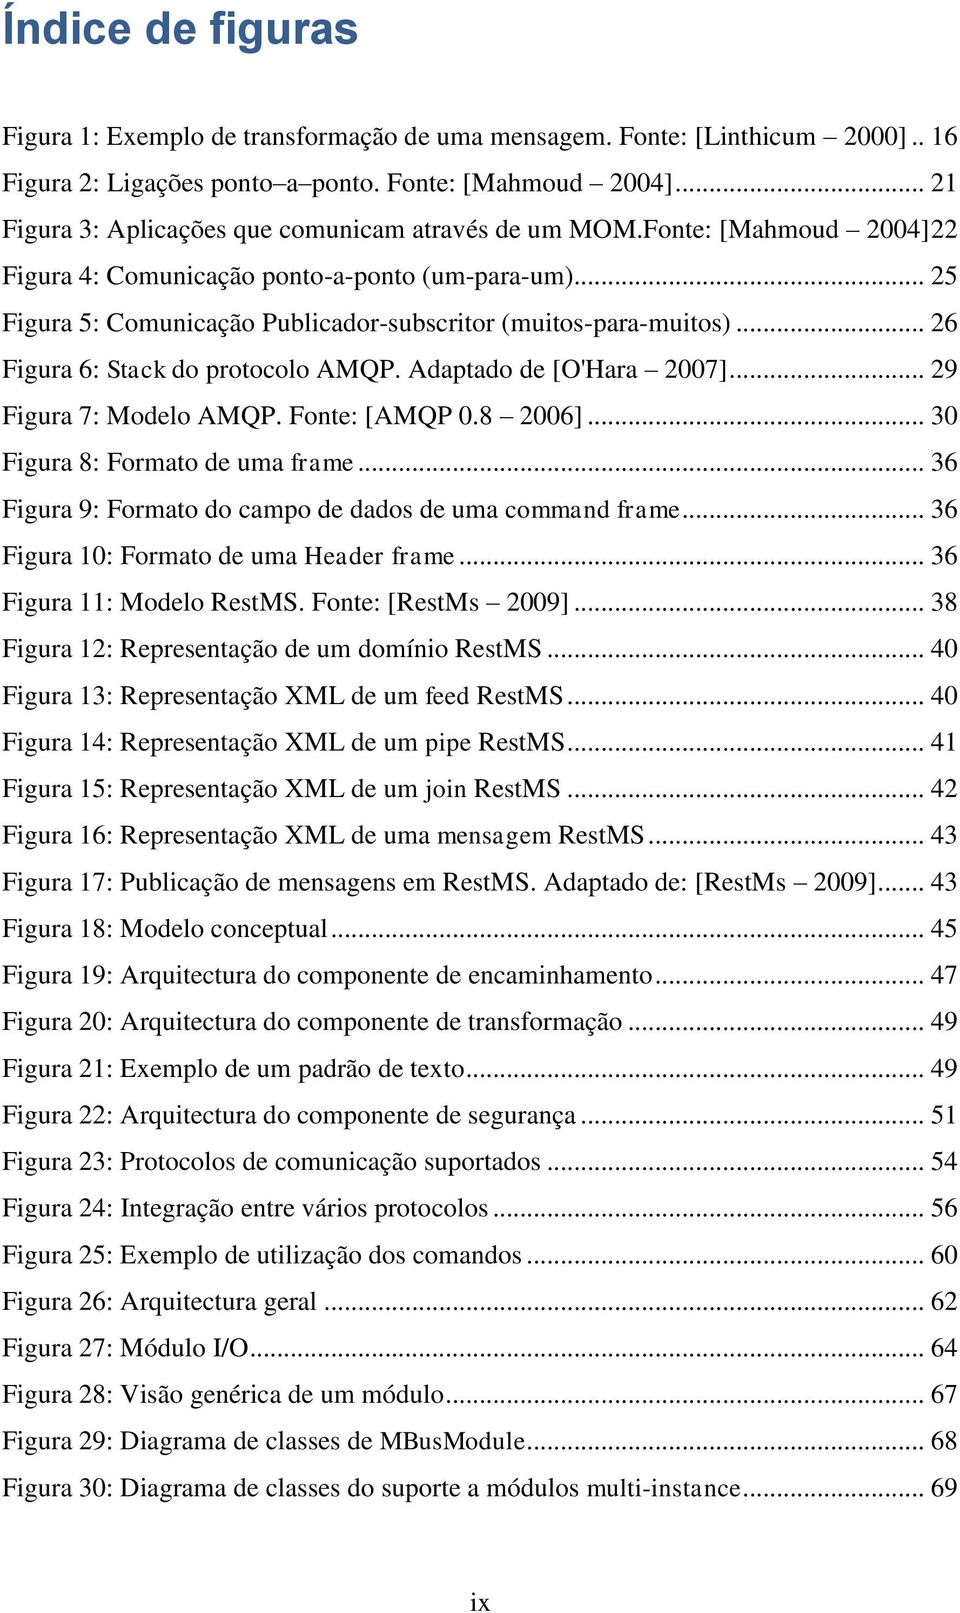 .. 25 Figura 5: Comunicação Publicador-subscritor (muitos-para-muitos)... 26 Figura 6: Stack do protocolo AMQP. Adaptado de [O'Hara 2007]... 29 Figura 7: Modelo AMQP. Fonte: [AMQP 0.8 2006].